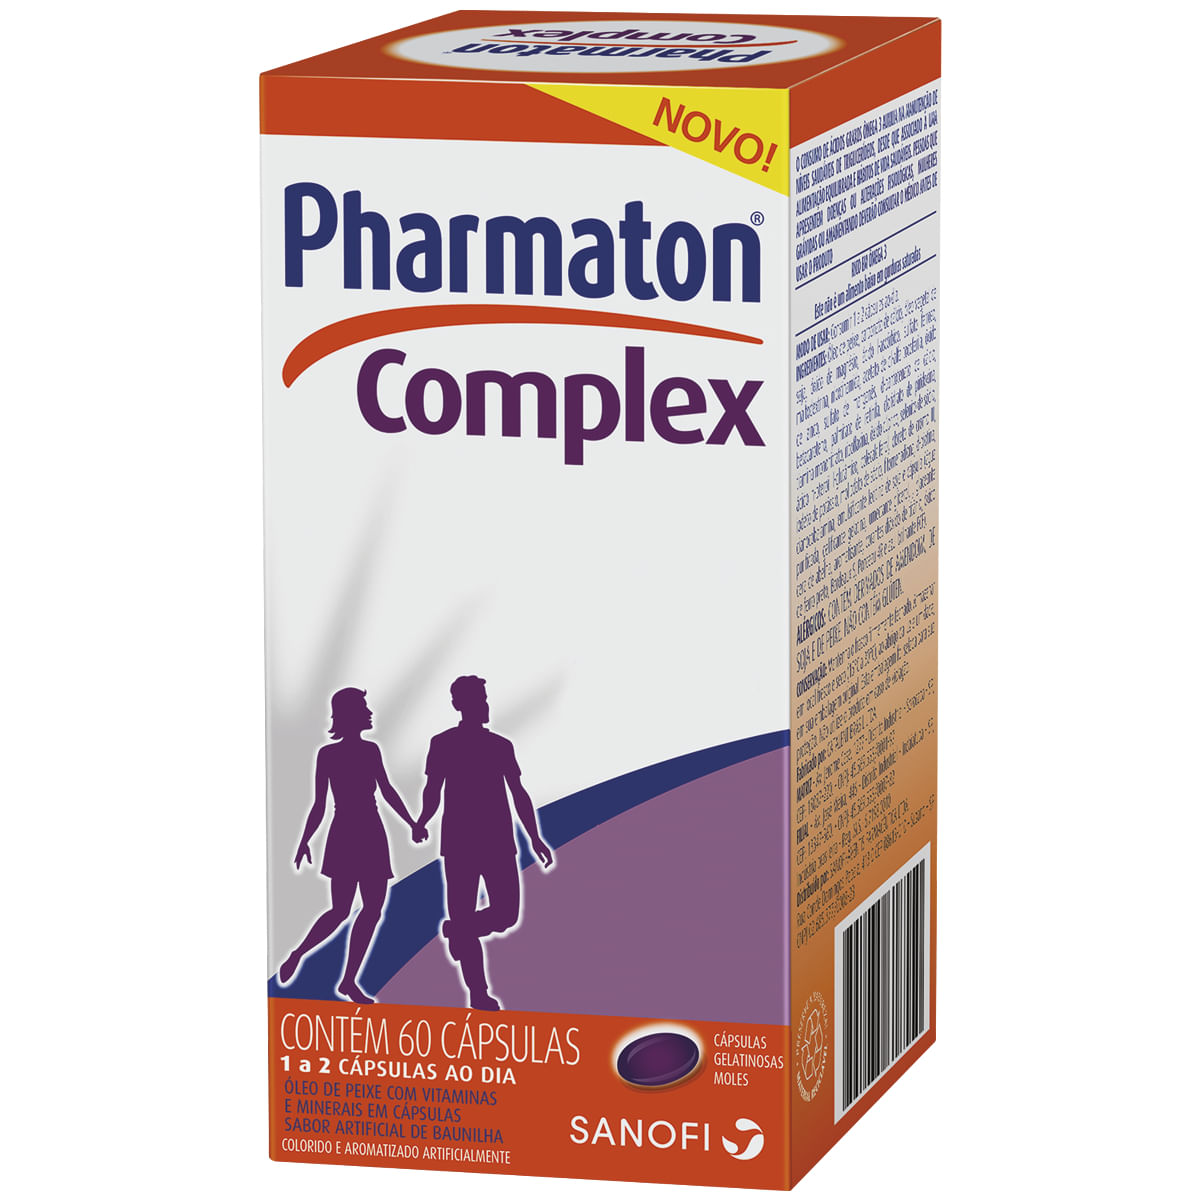 phamaton-complex-60-capsulas-gelatinosas-1.jpg